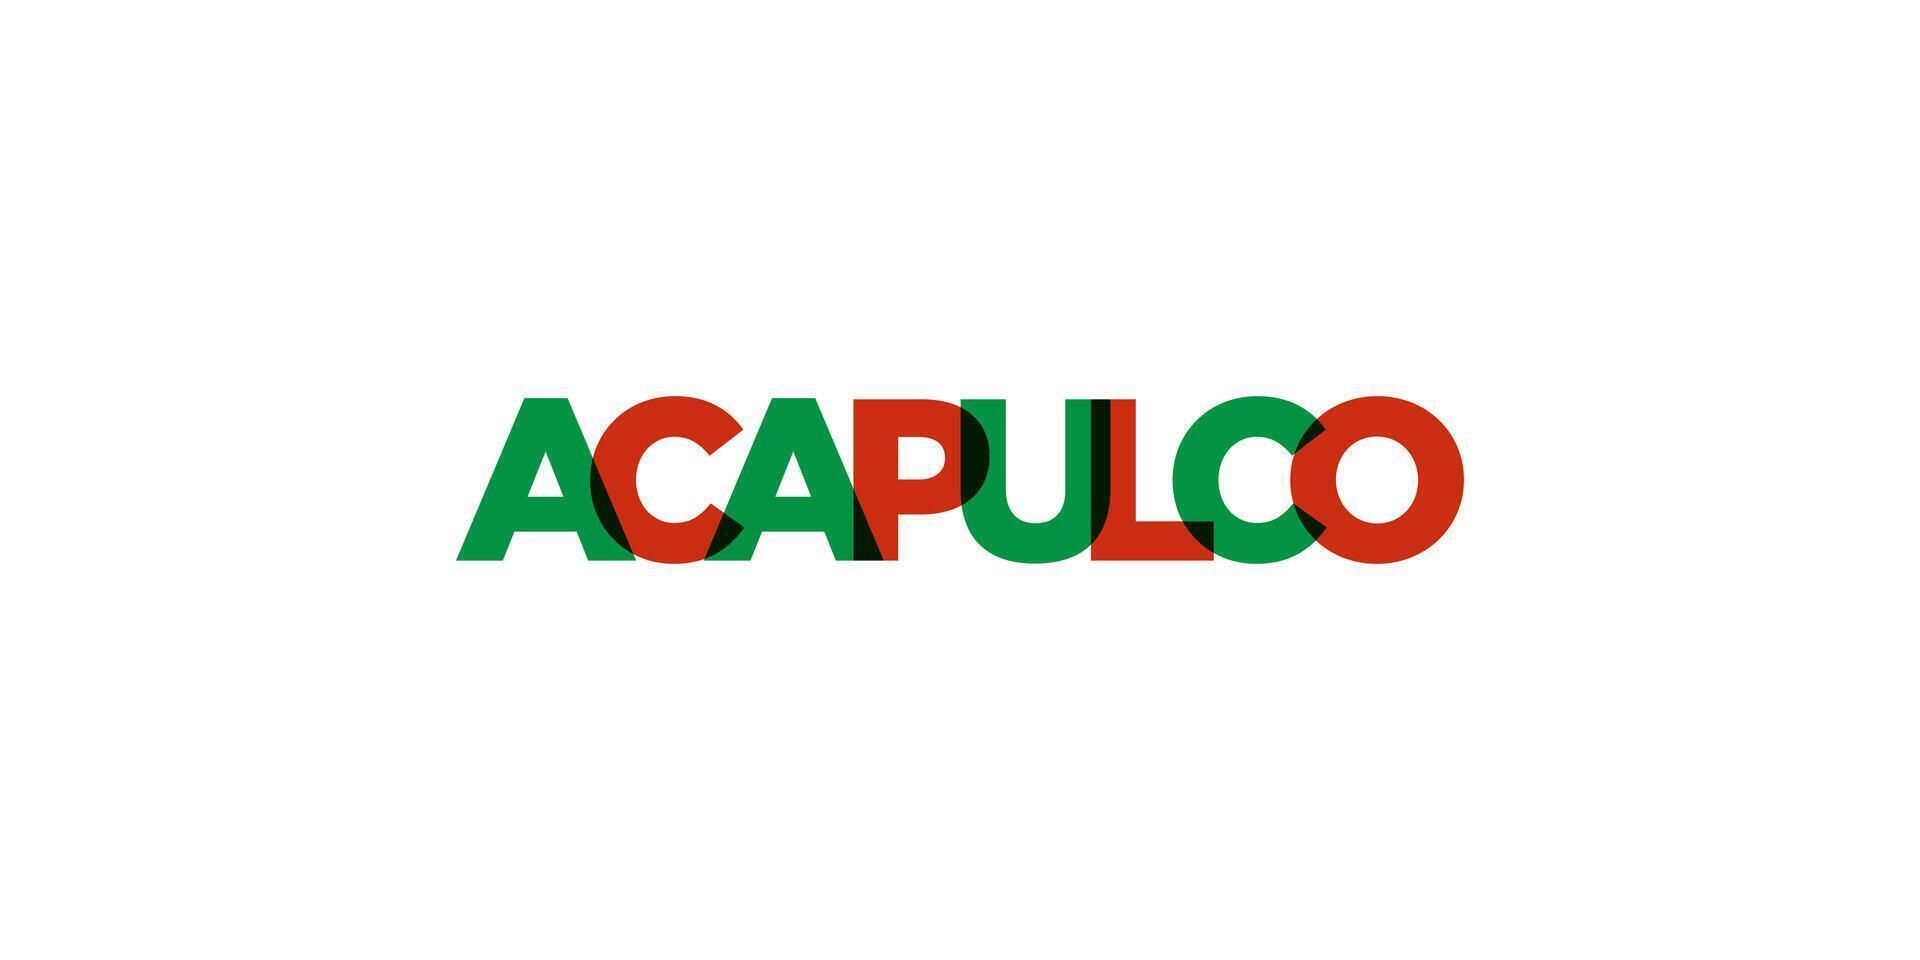 acapulco im das Mexiko Emblem. das Design Eigenschaften ein geometrisch Stil, Vektor Illustration mit Fett gedruckt Typografie im ein modern Schriftart. das Grafik Slogan Beschriftung.